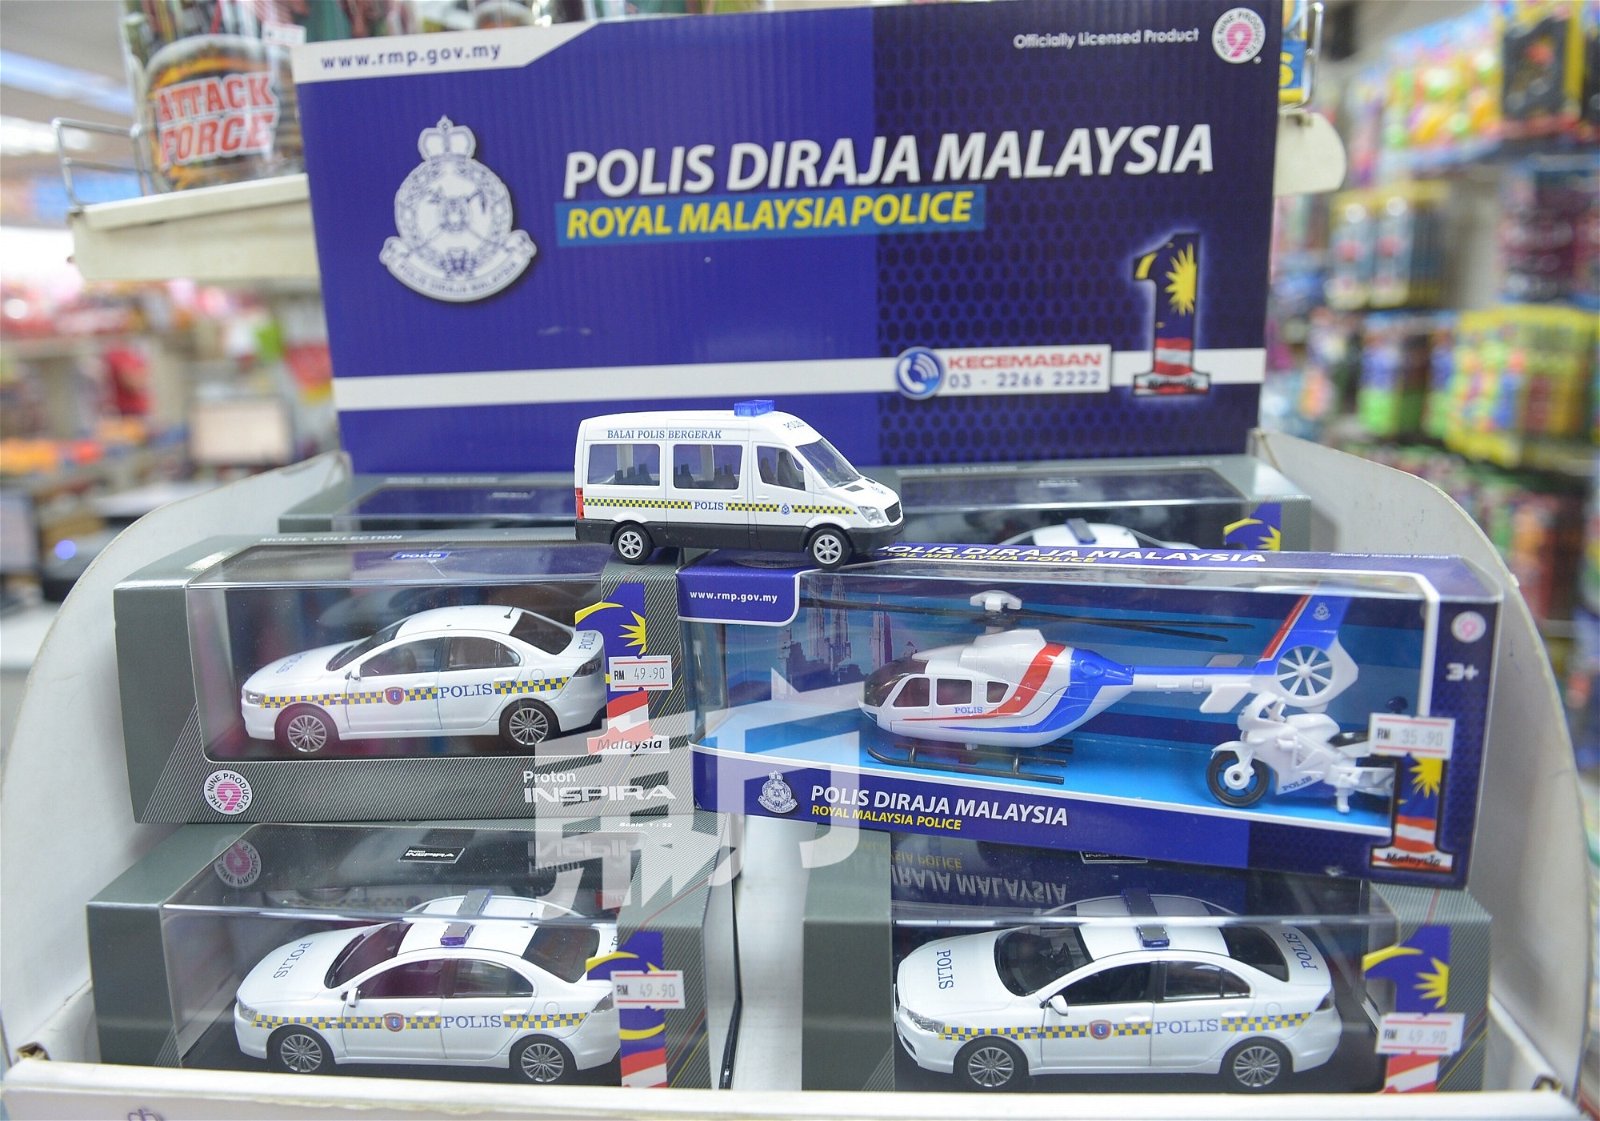 玩具专卖店店员陈文锦指，在众多玩具类别中，珍藏爱好类仍有市场，该店获马来西亚皇家警察授权销售警用交通工具模型，相当受收集者欢迎。